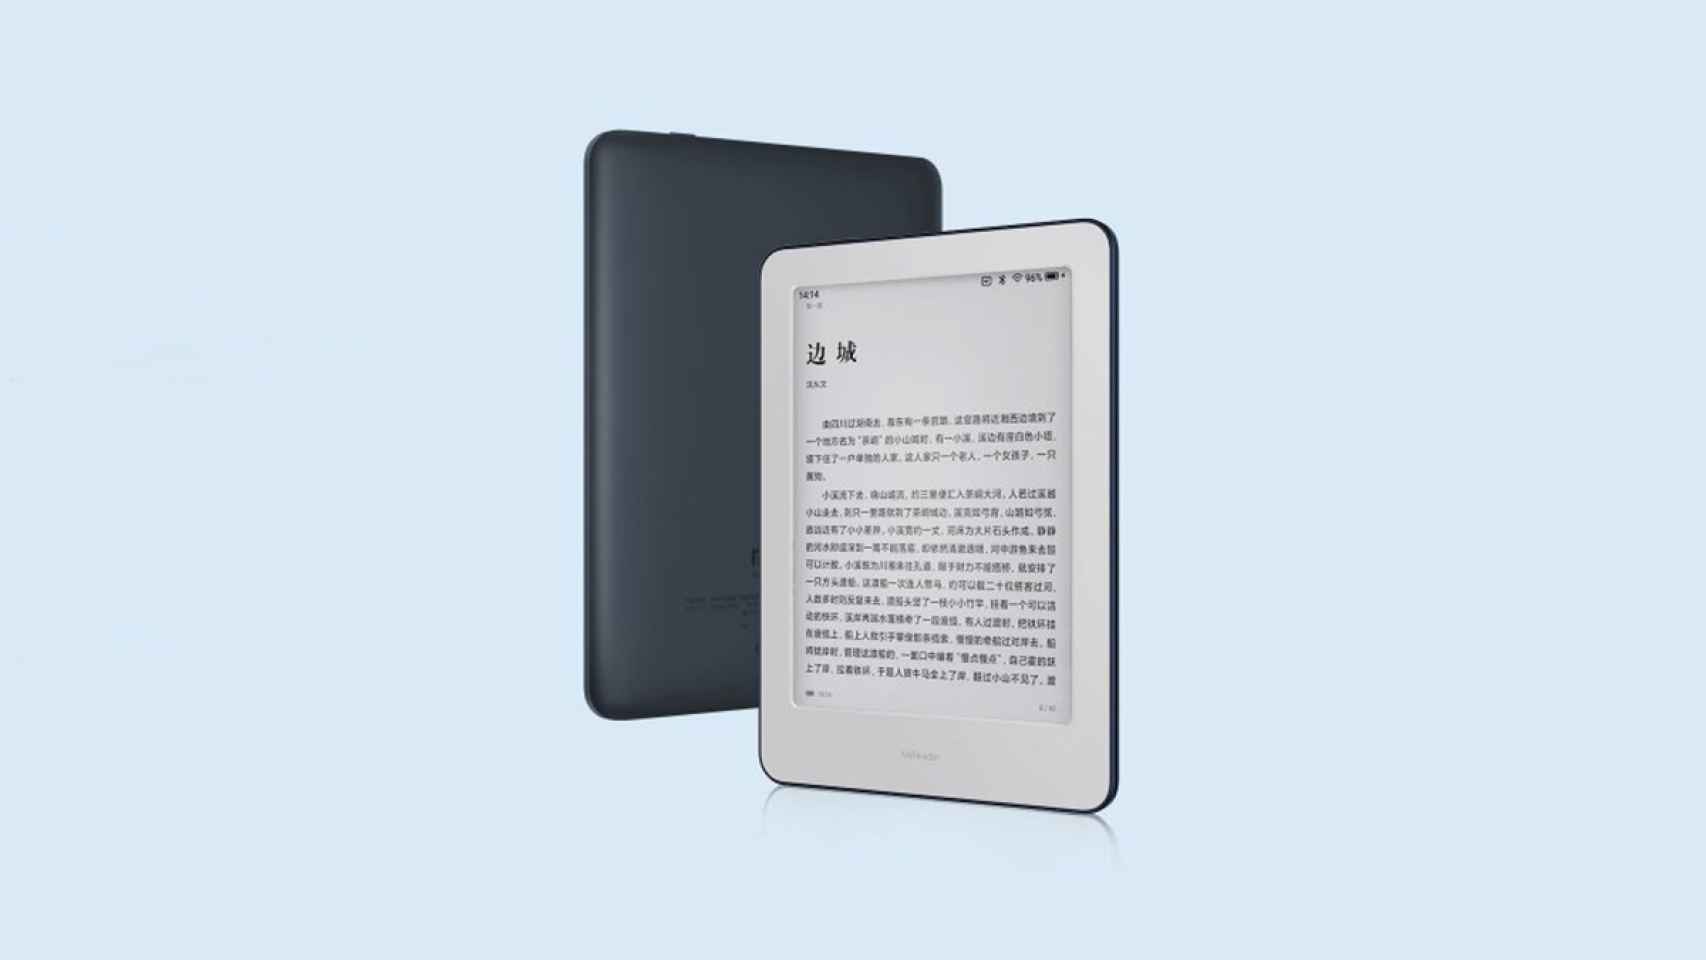 Libro Electrónico Kindle Blanco